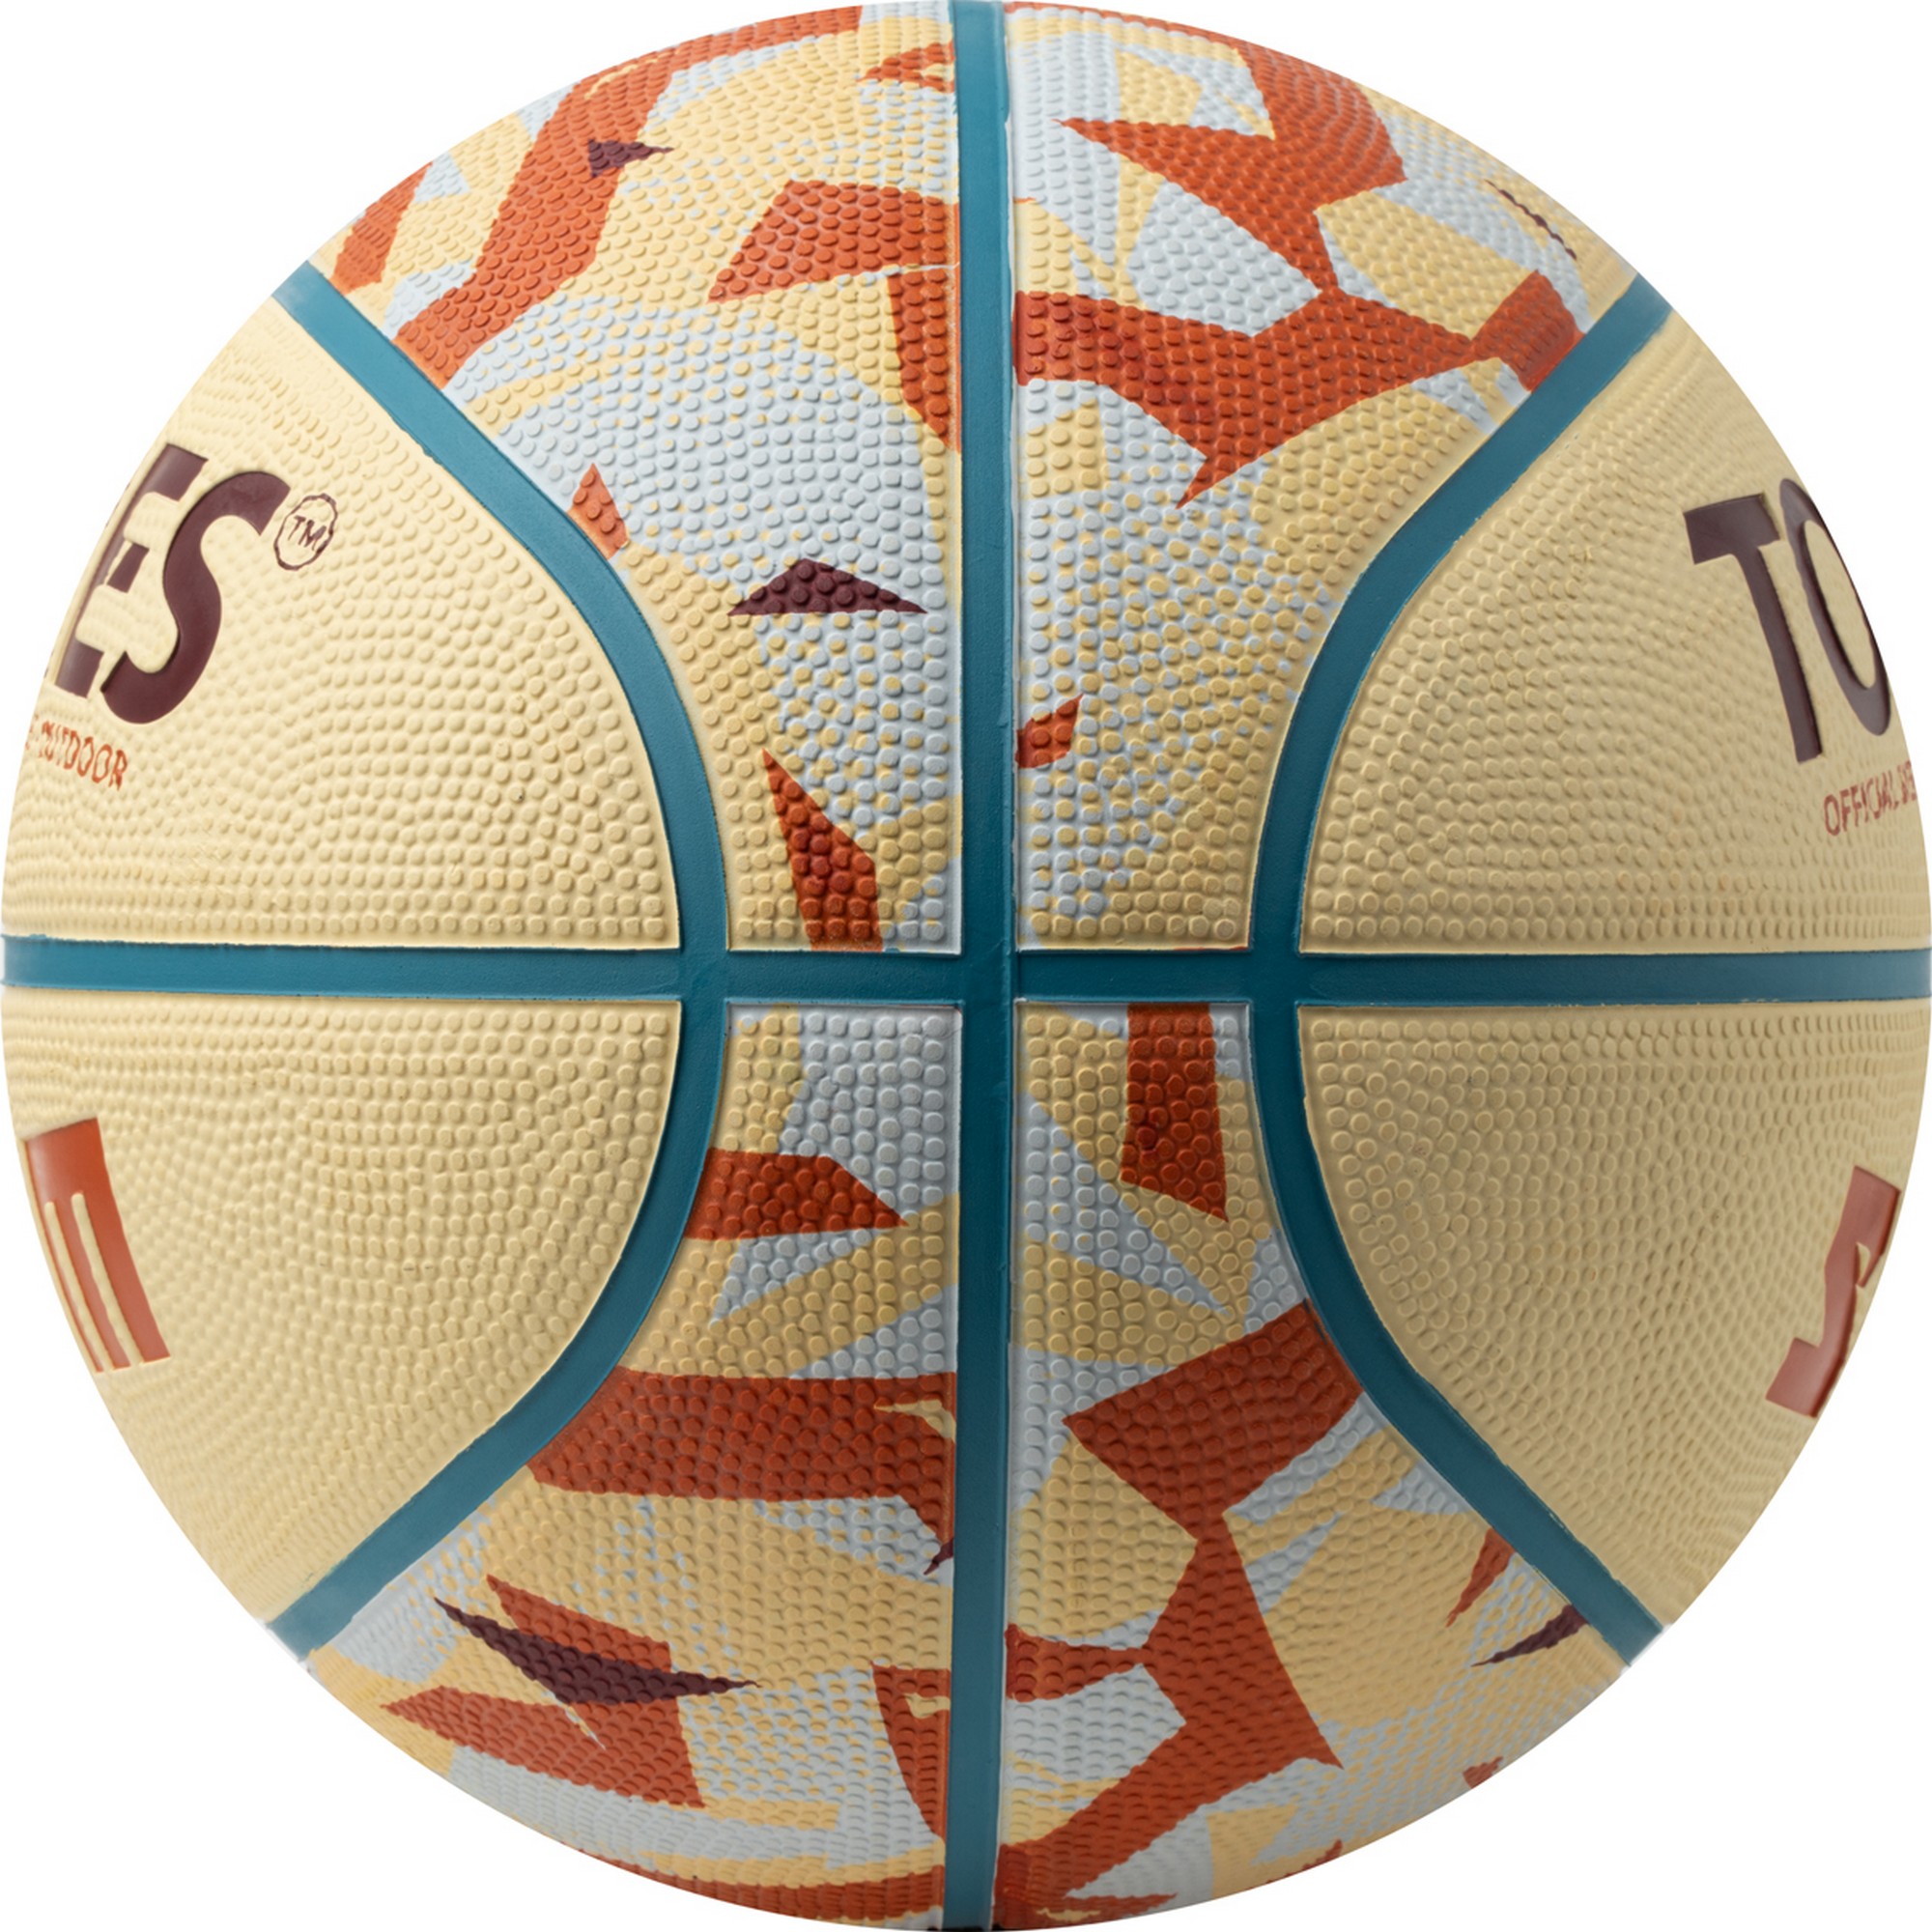 Мяч баскетбольный Torres Slam B023145 р.5 2000_2000